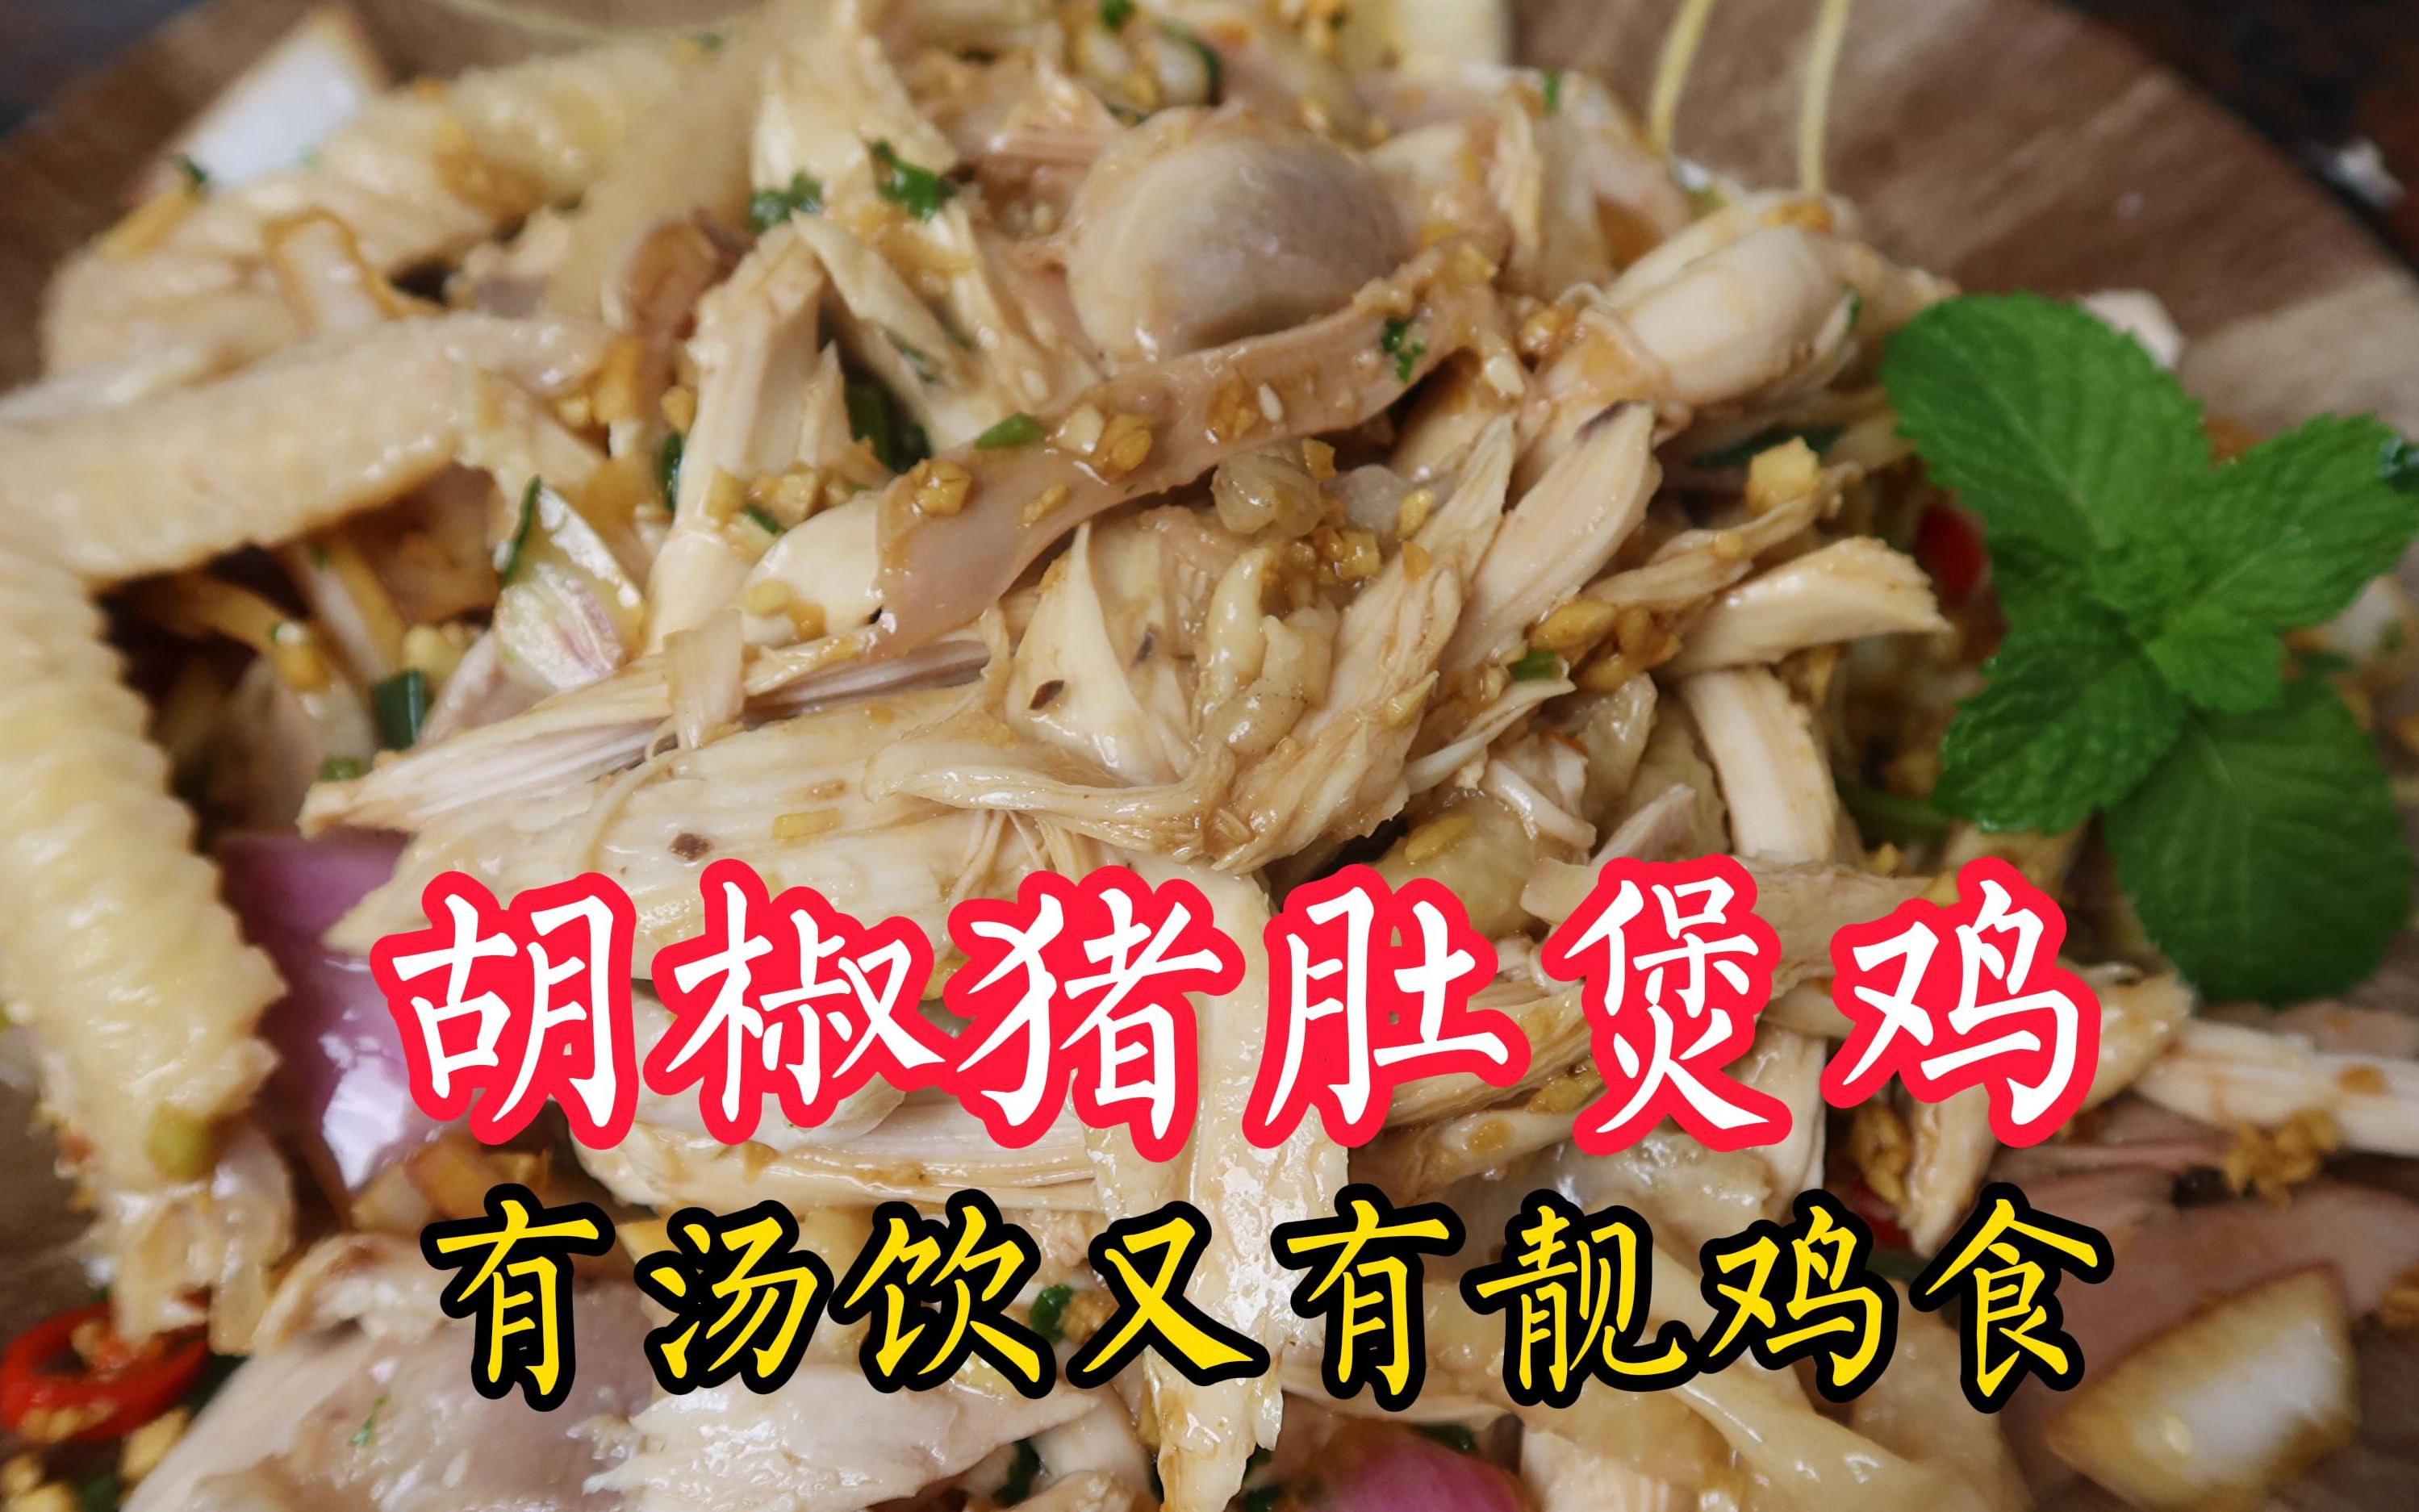 隔水蒸鸡，广东人经典做法，皮脆肉嫩，鲜香味美，比白切鸡还好吃 - 哔哩哔哩